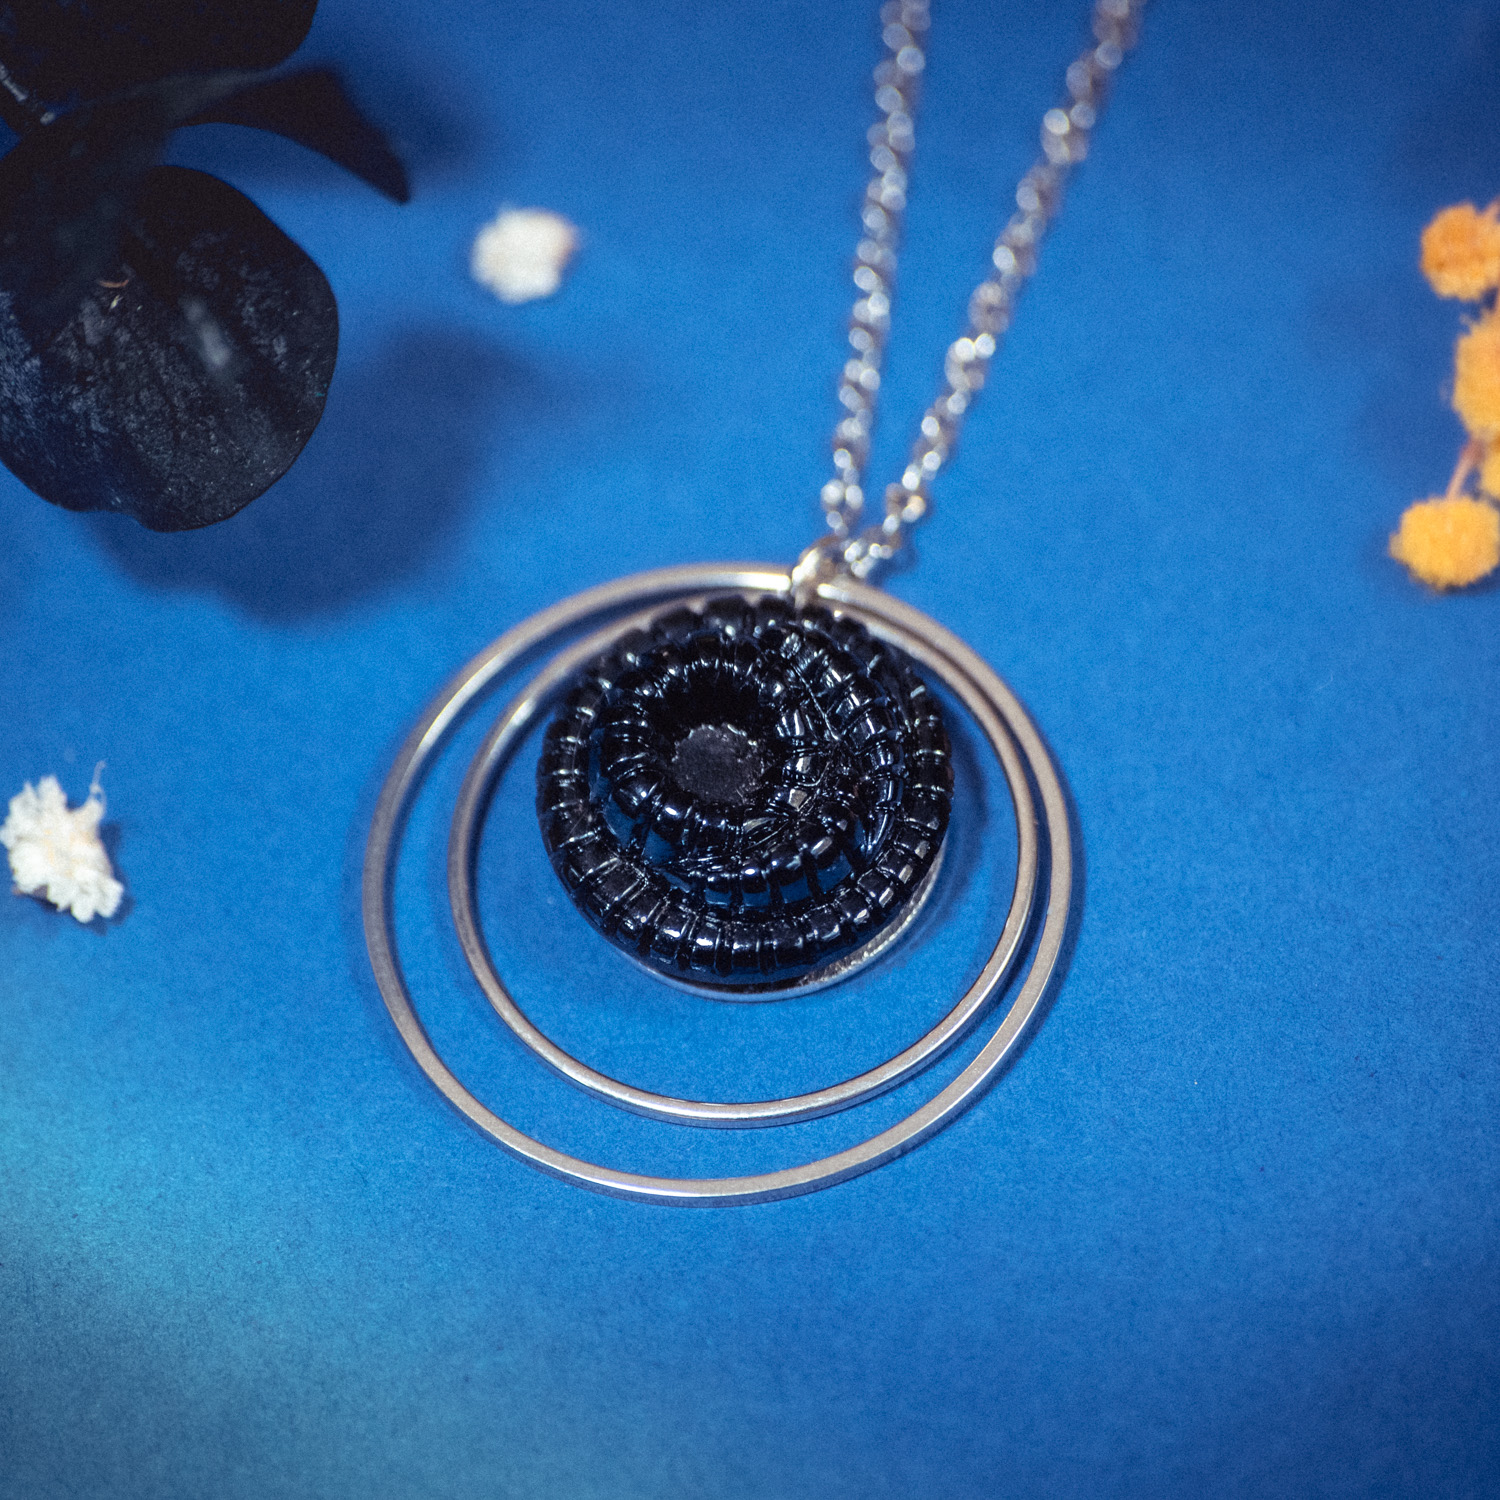 Assuna – Collier Lunare Faustine bleu noir – bouton ancien 1940 – collier d’inspiration vintage en forme de croissant de lune